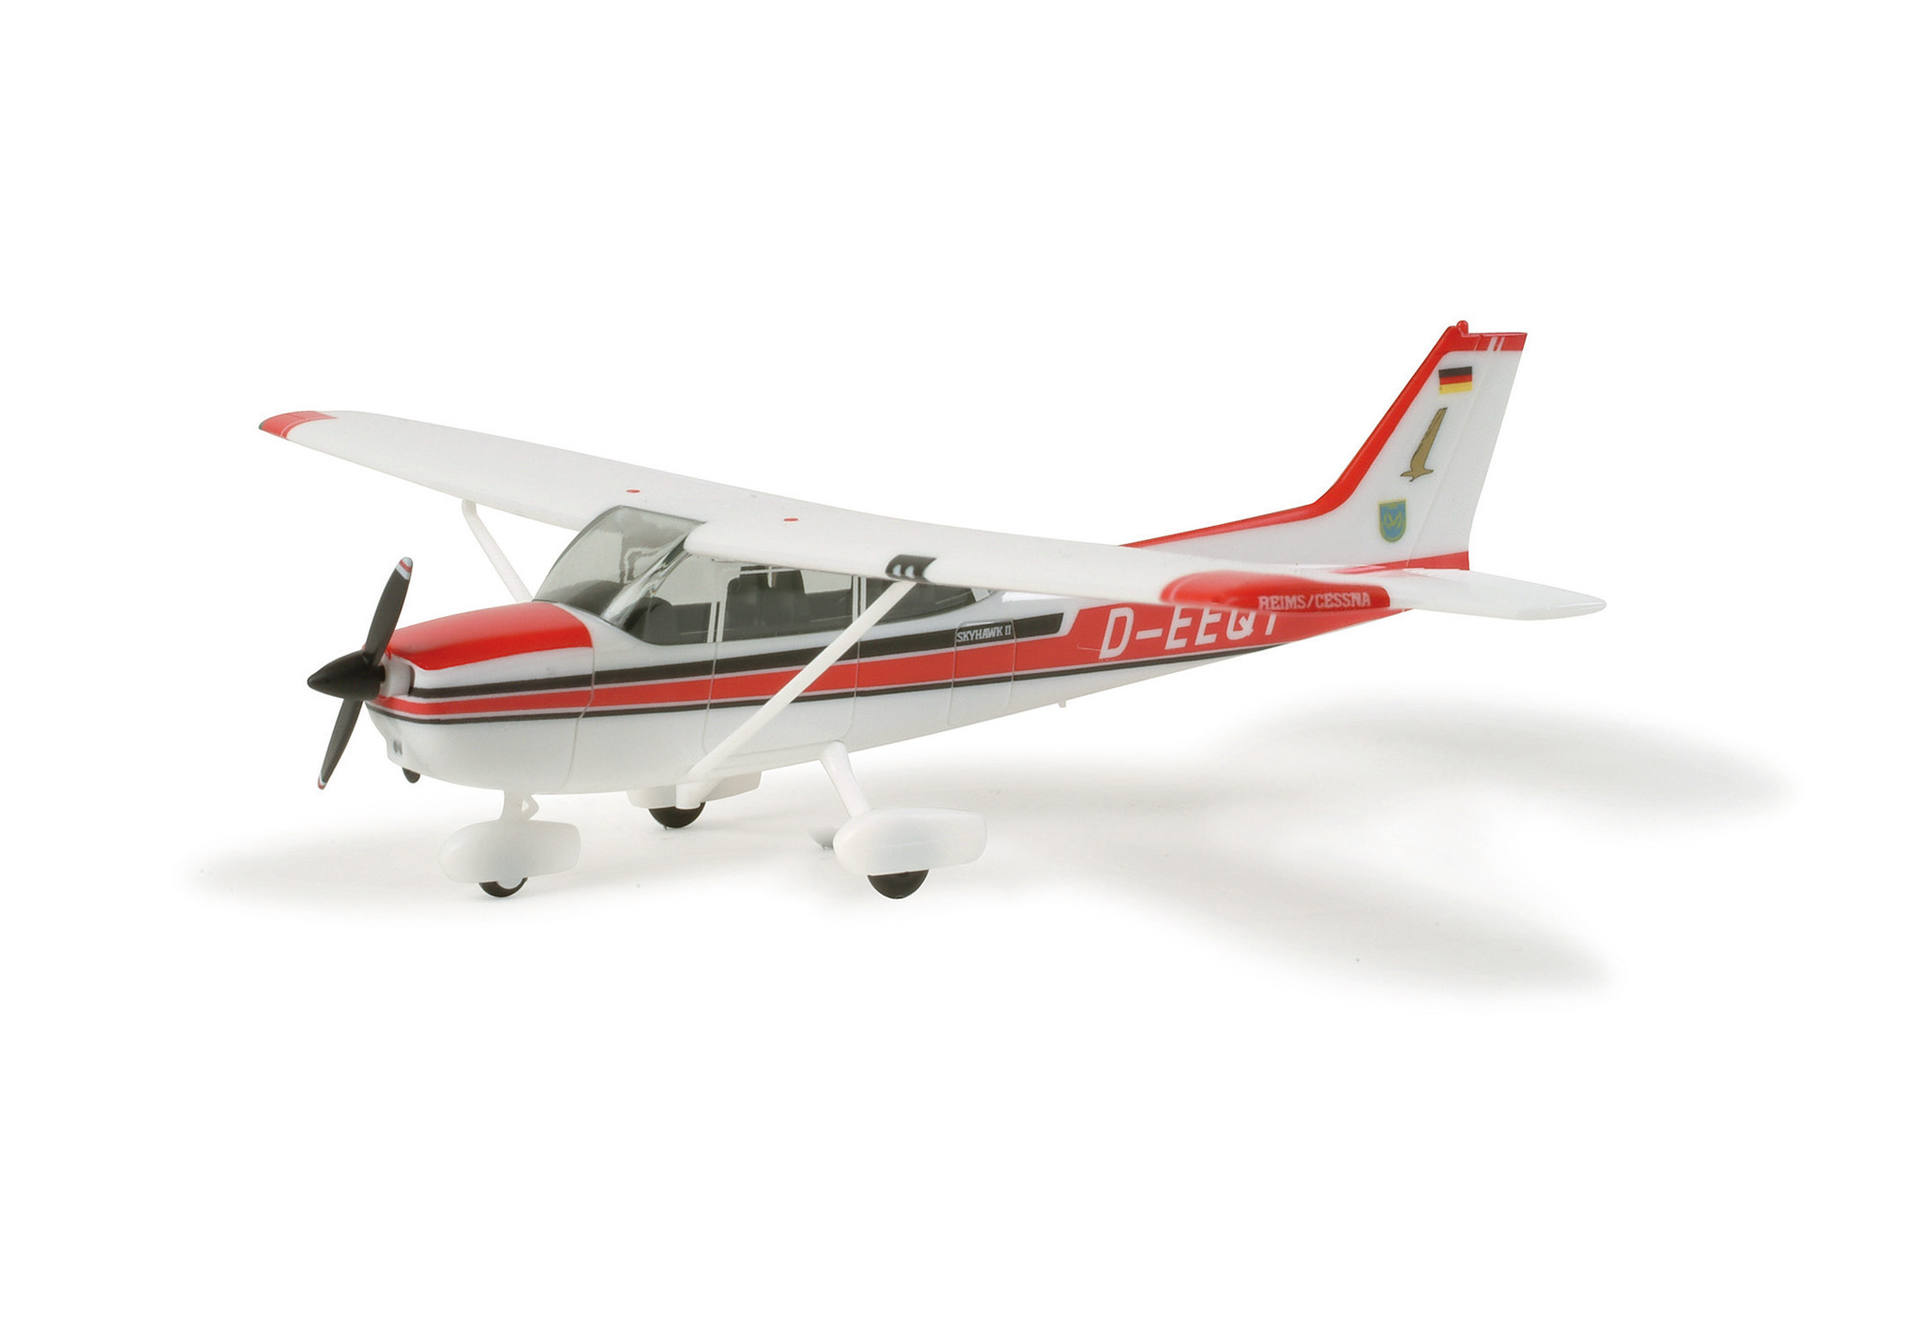 Cessna 172 Skyhawk "Petersdorf"